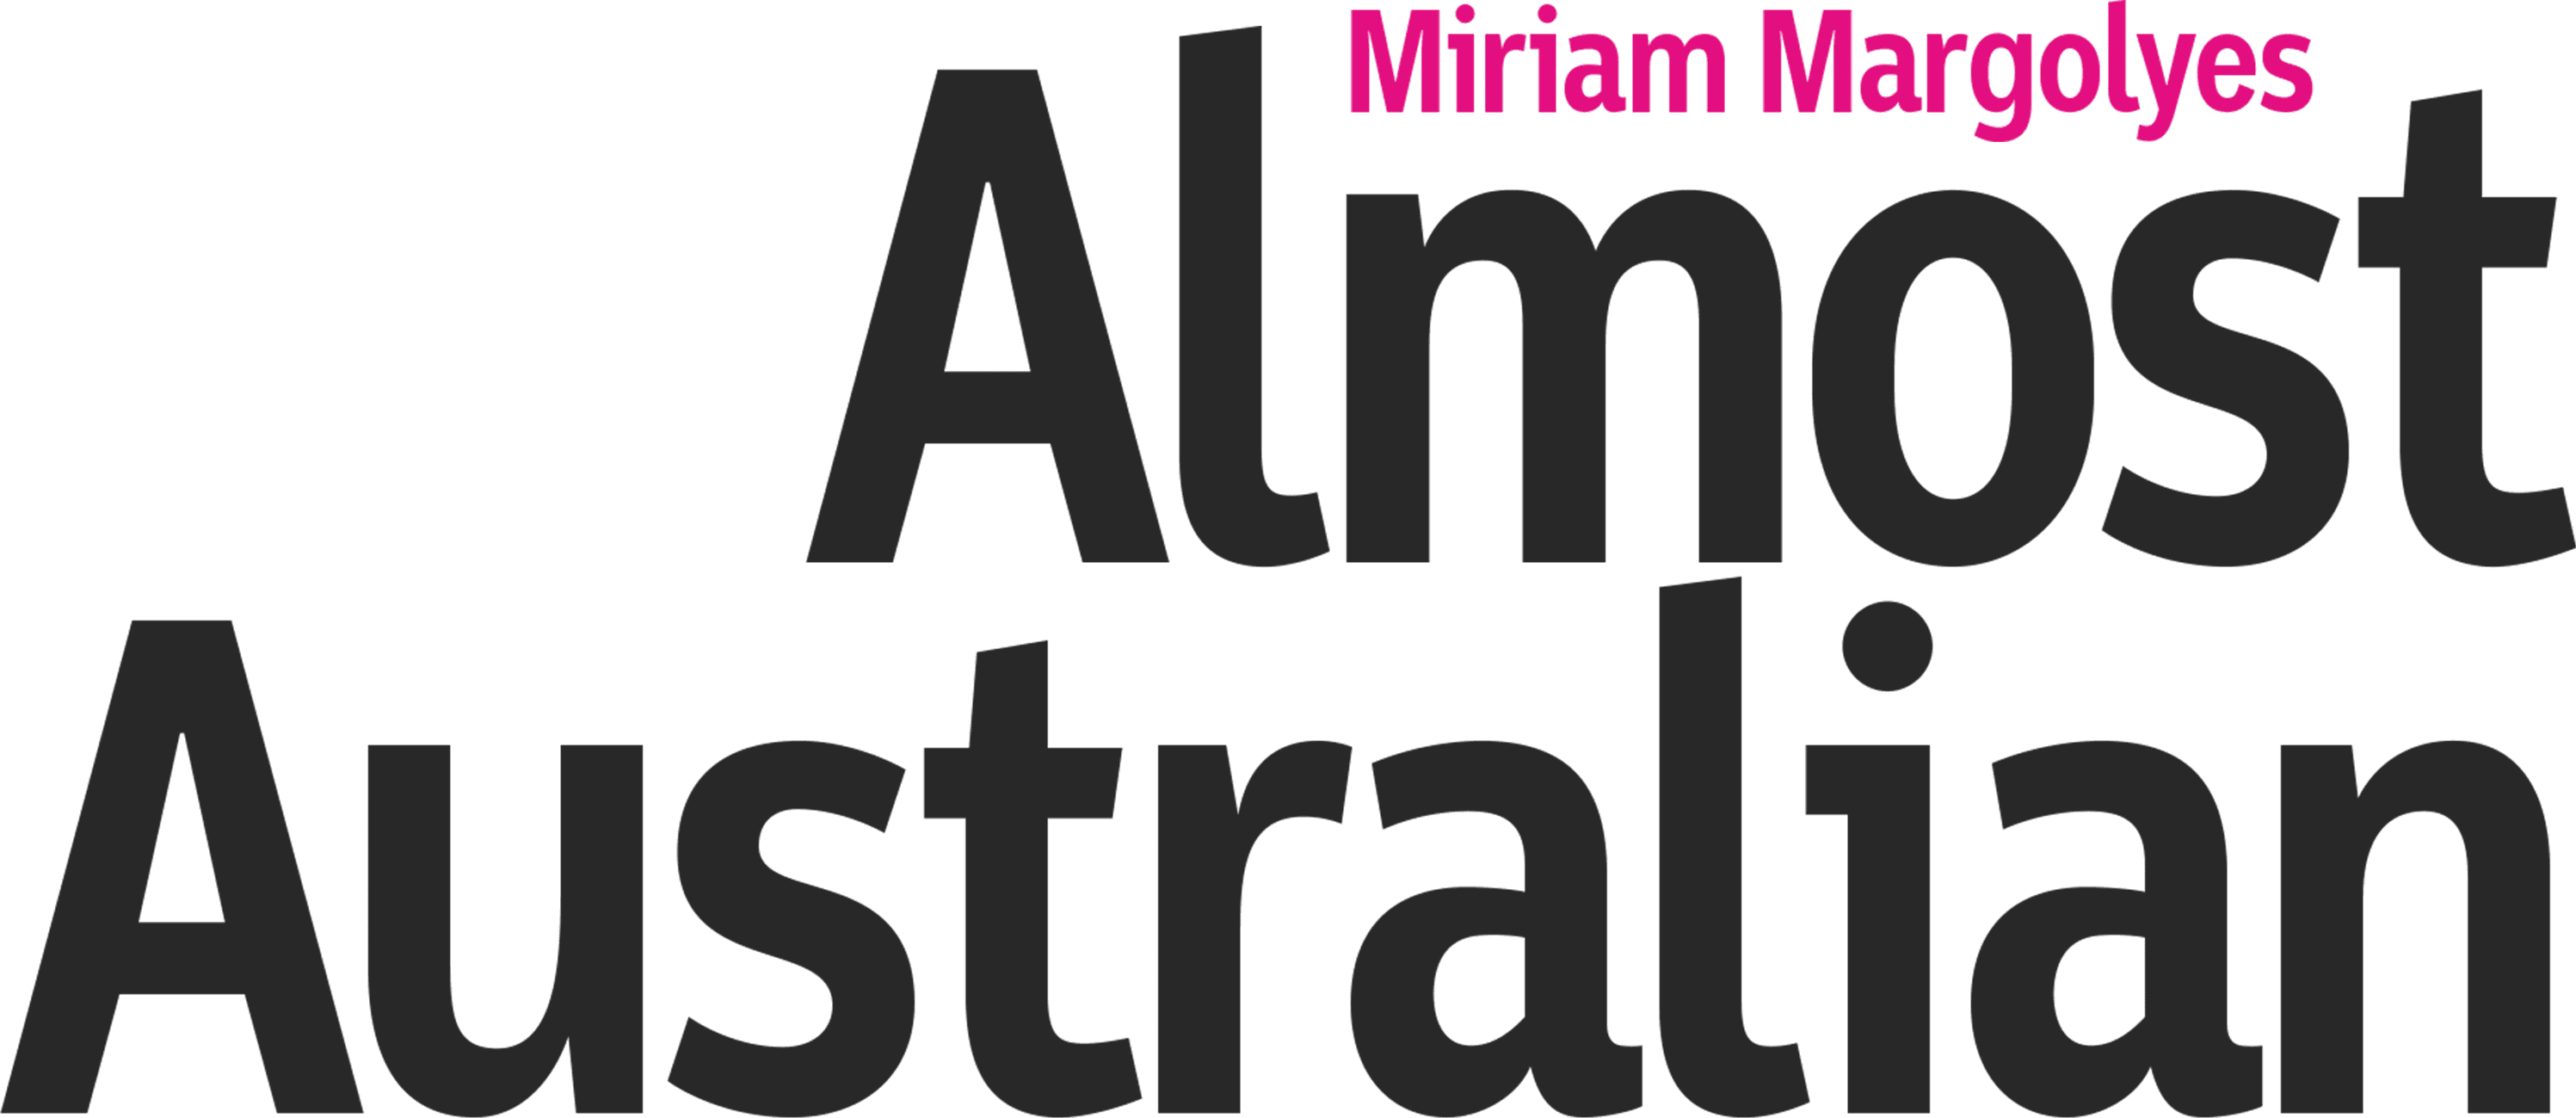 Miriam Margolyes: Almost Australian logo